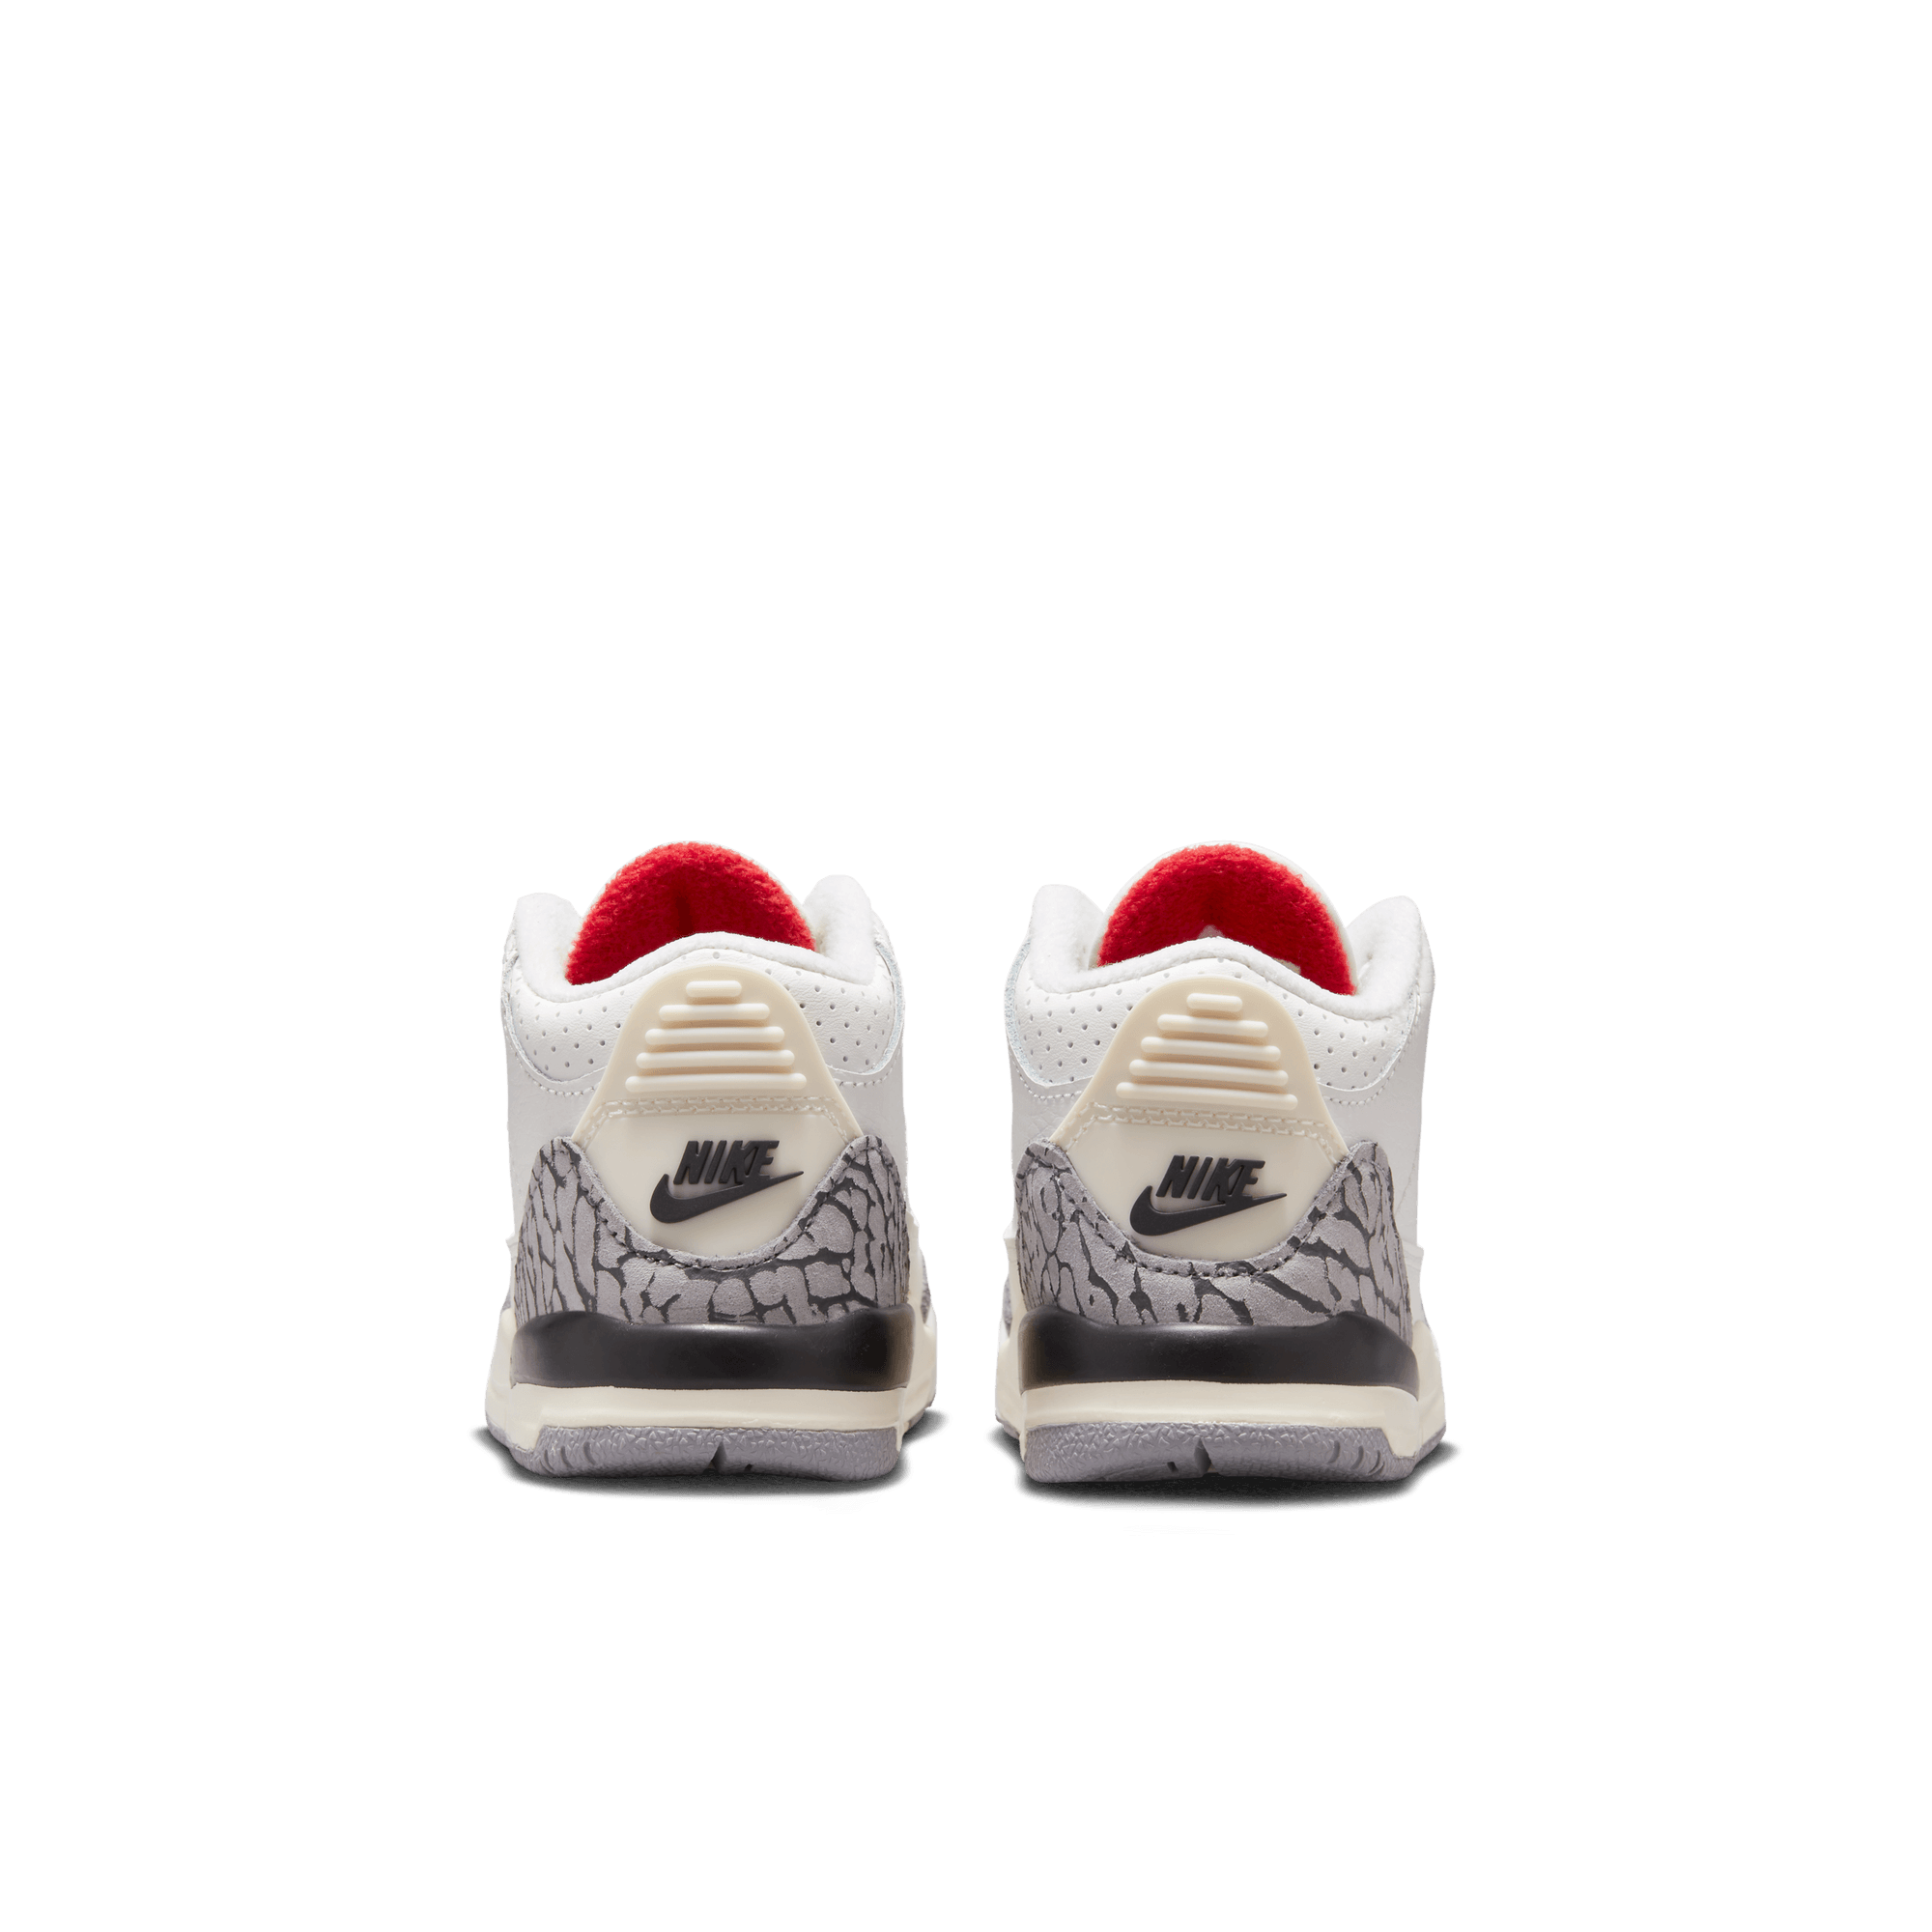 AJ Air Jordan 3 Retro - Toddler